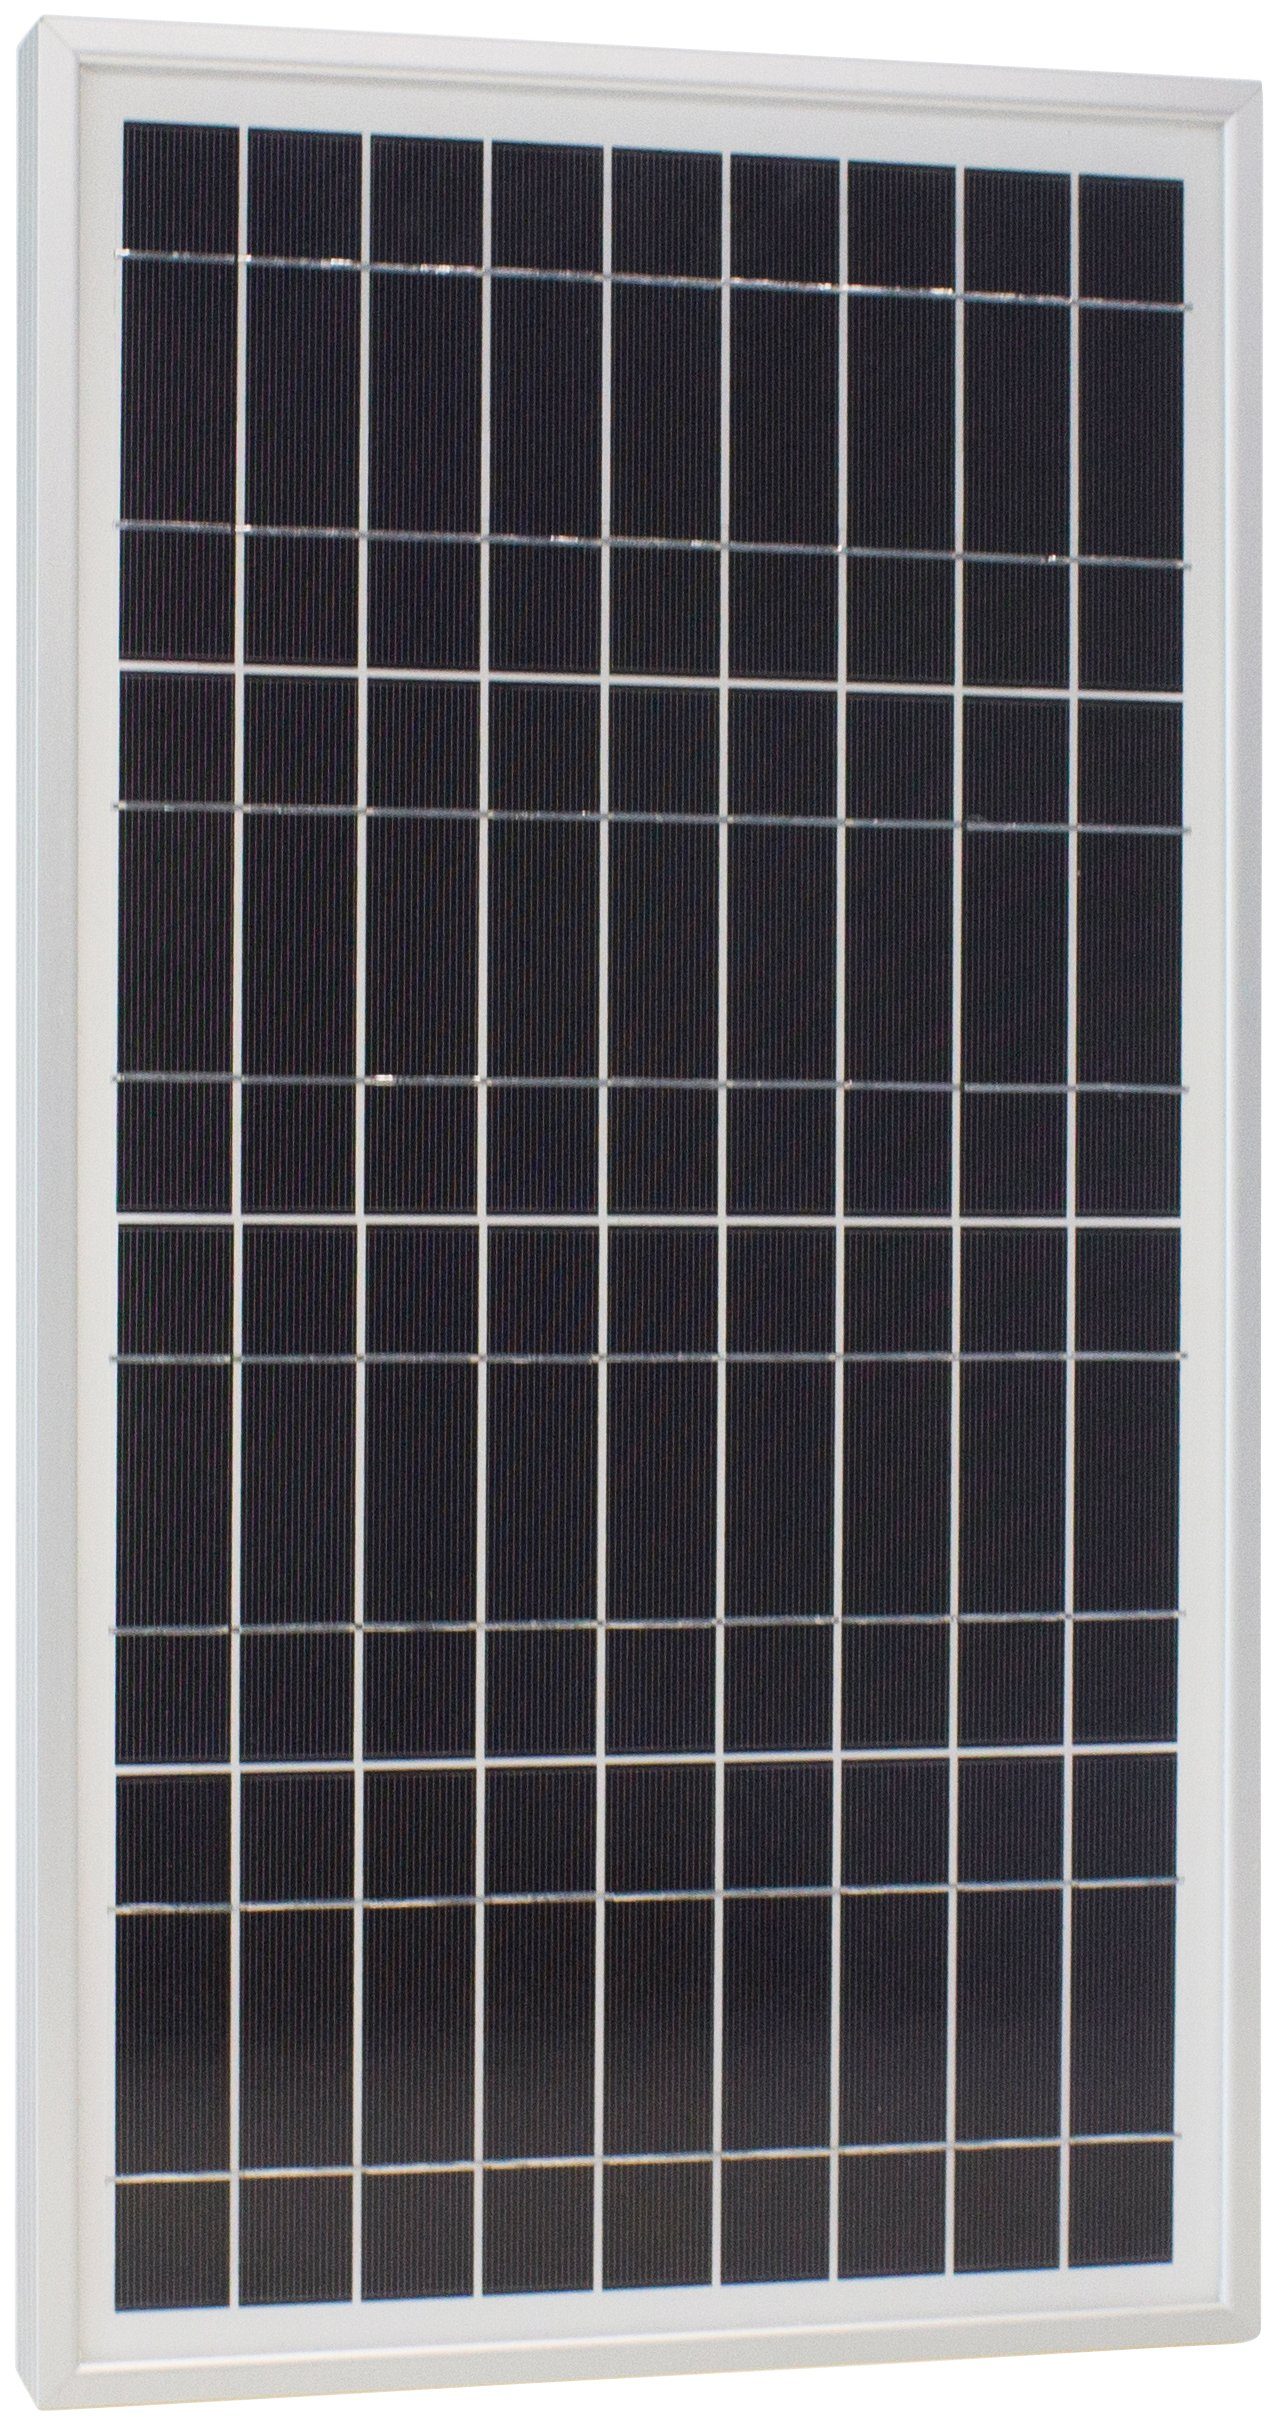 Phaesun Solarmodul Sun 20 12 W, 20 Plus VDC, S, IP65 Schutz